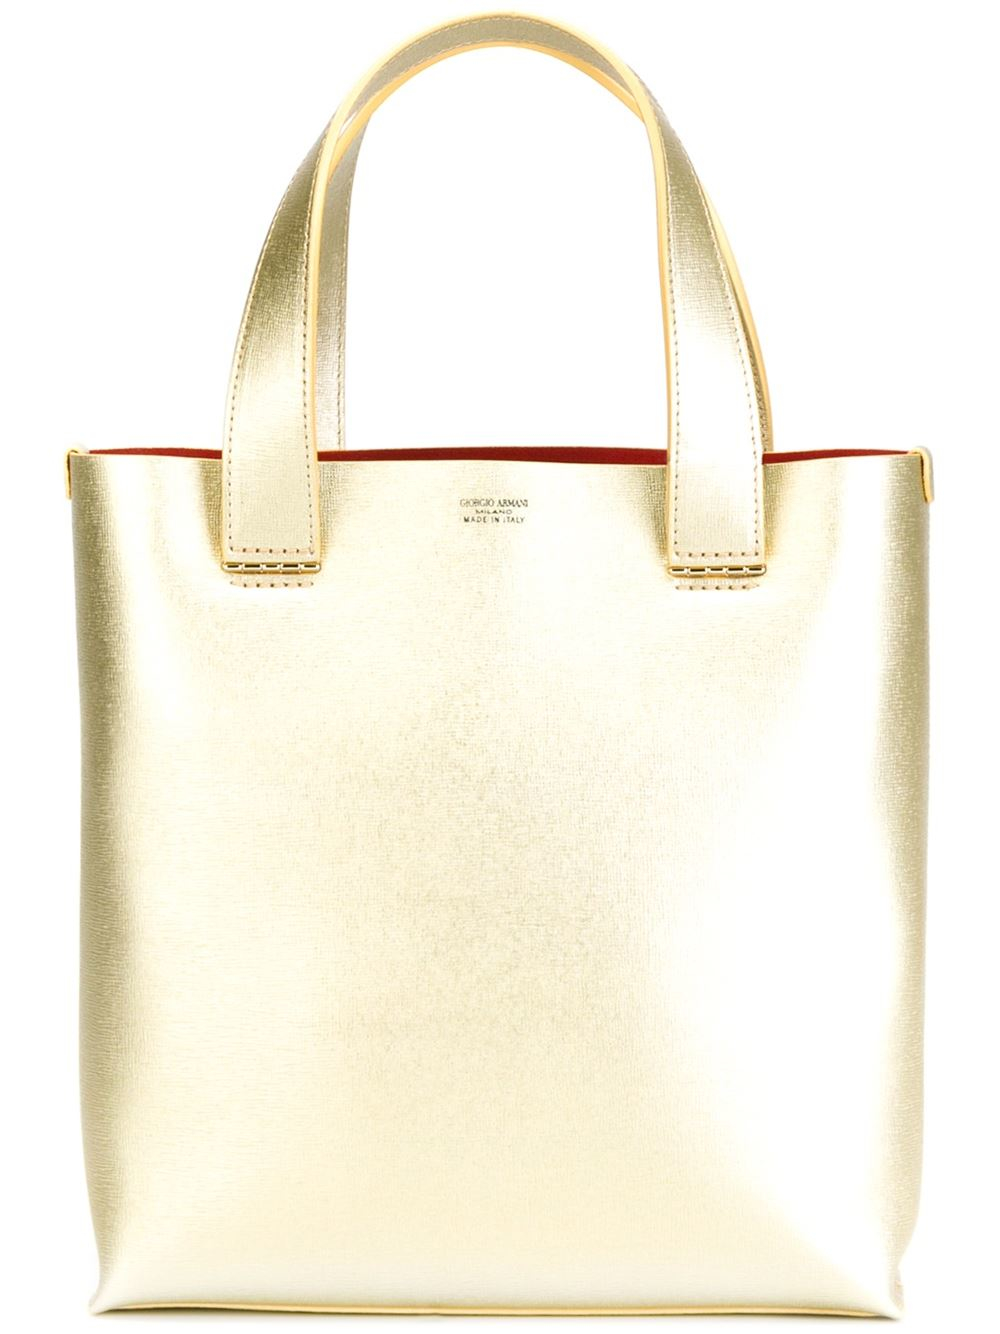 Giorgio armani Rectangular Tote Bag in Gold (metallic) | Lyst